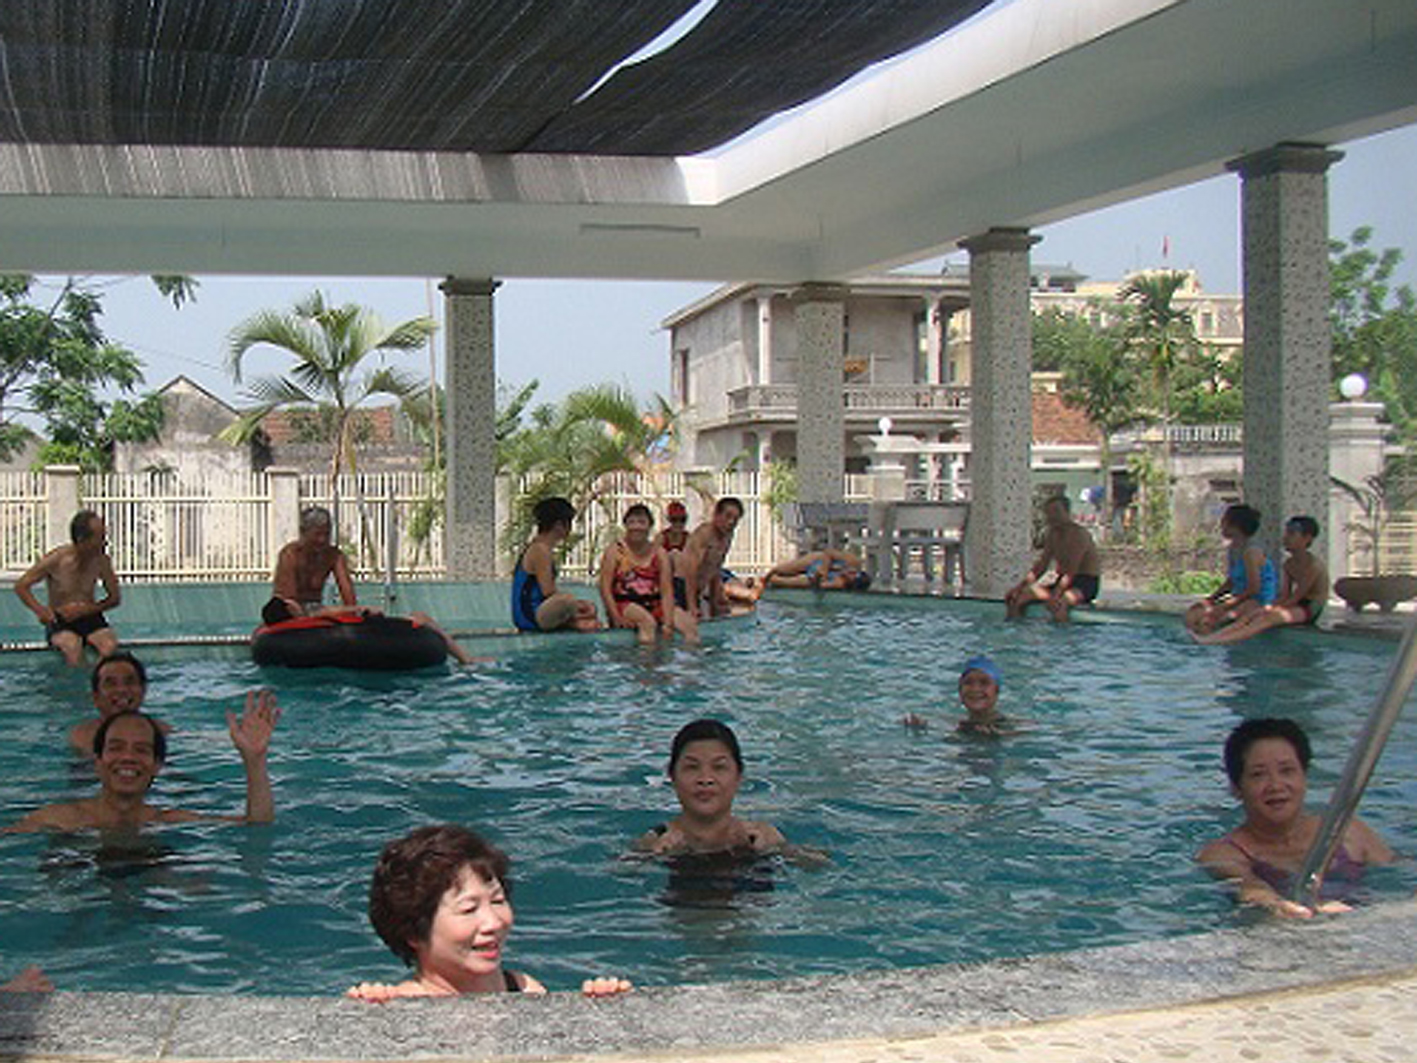 Hà Nội – Tắm khoáng Ngọc Sơn Resort (Phú Thọ), 1 ngày, đoàn riêng